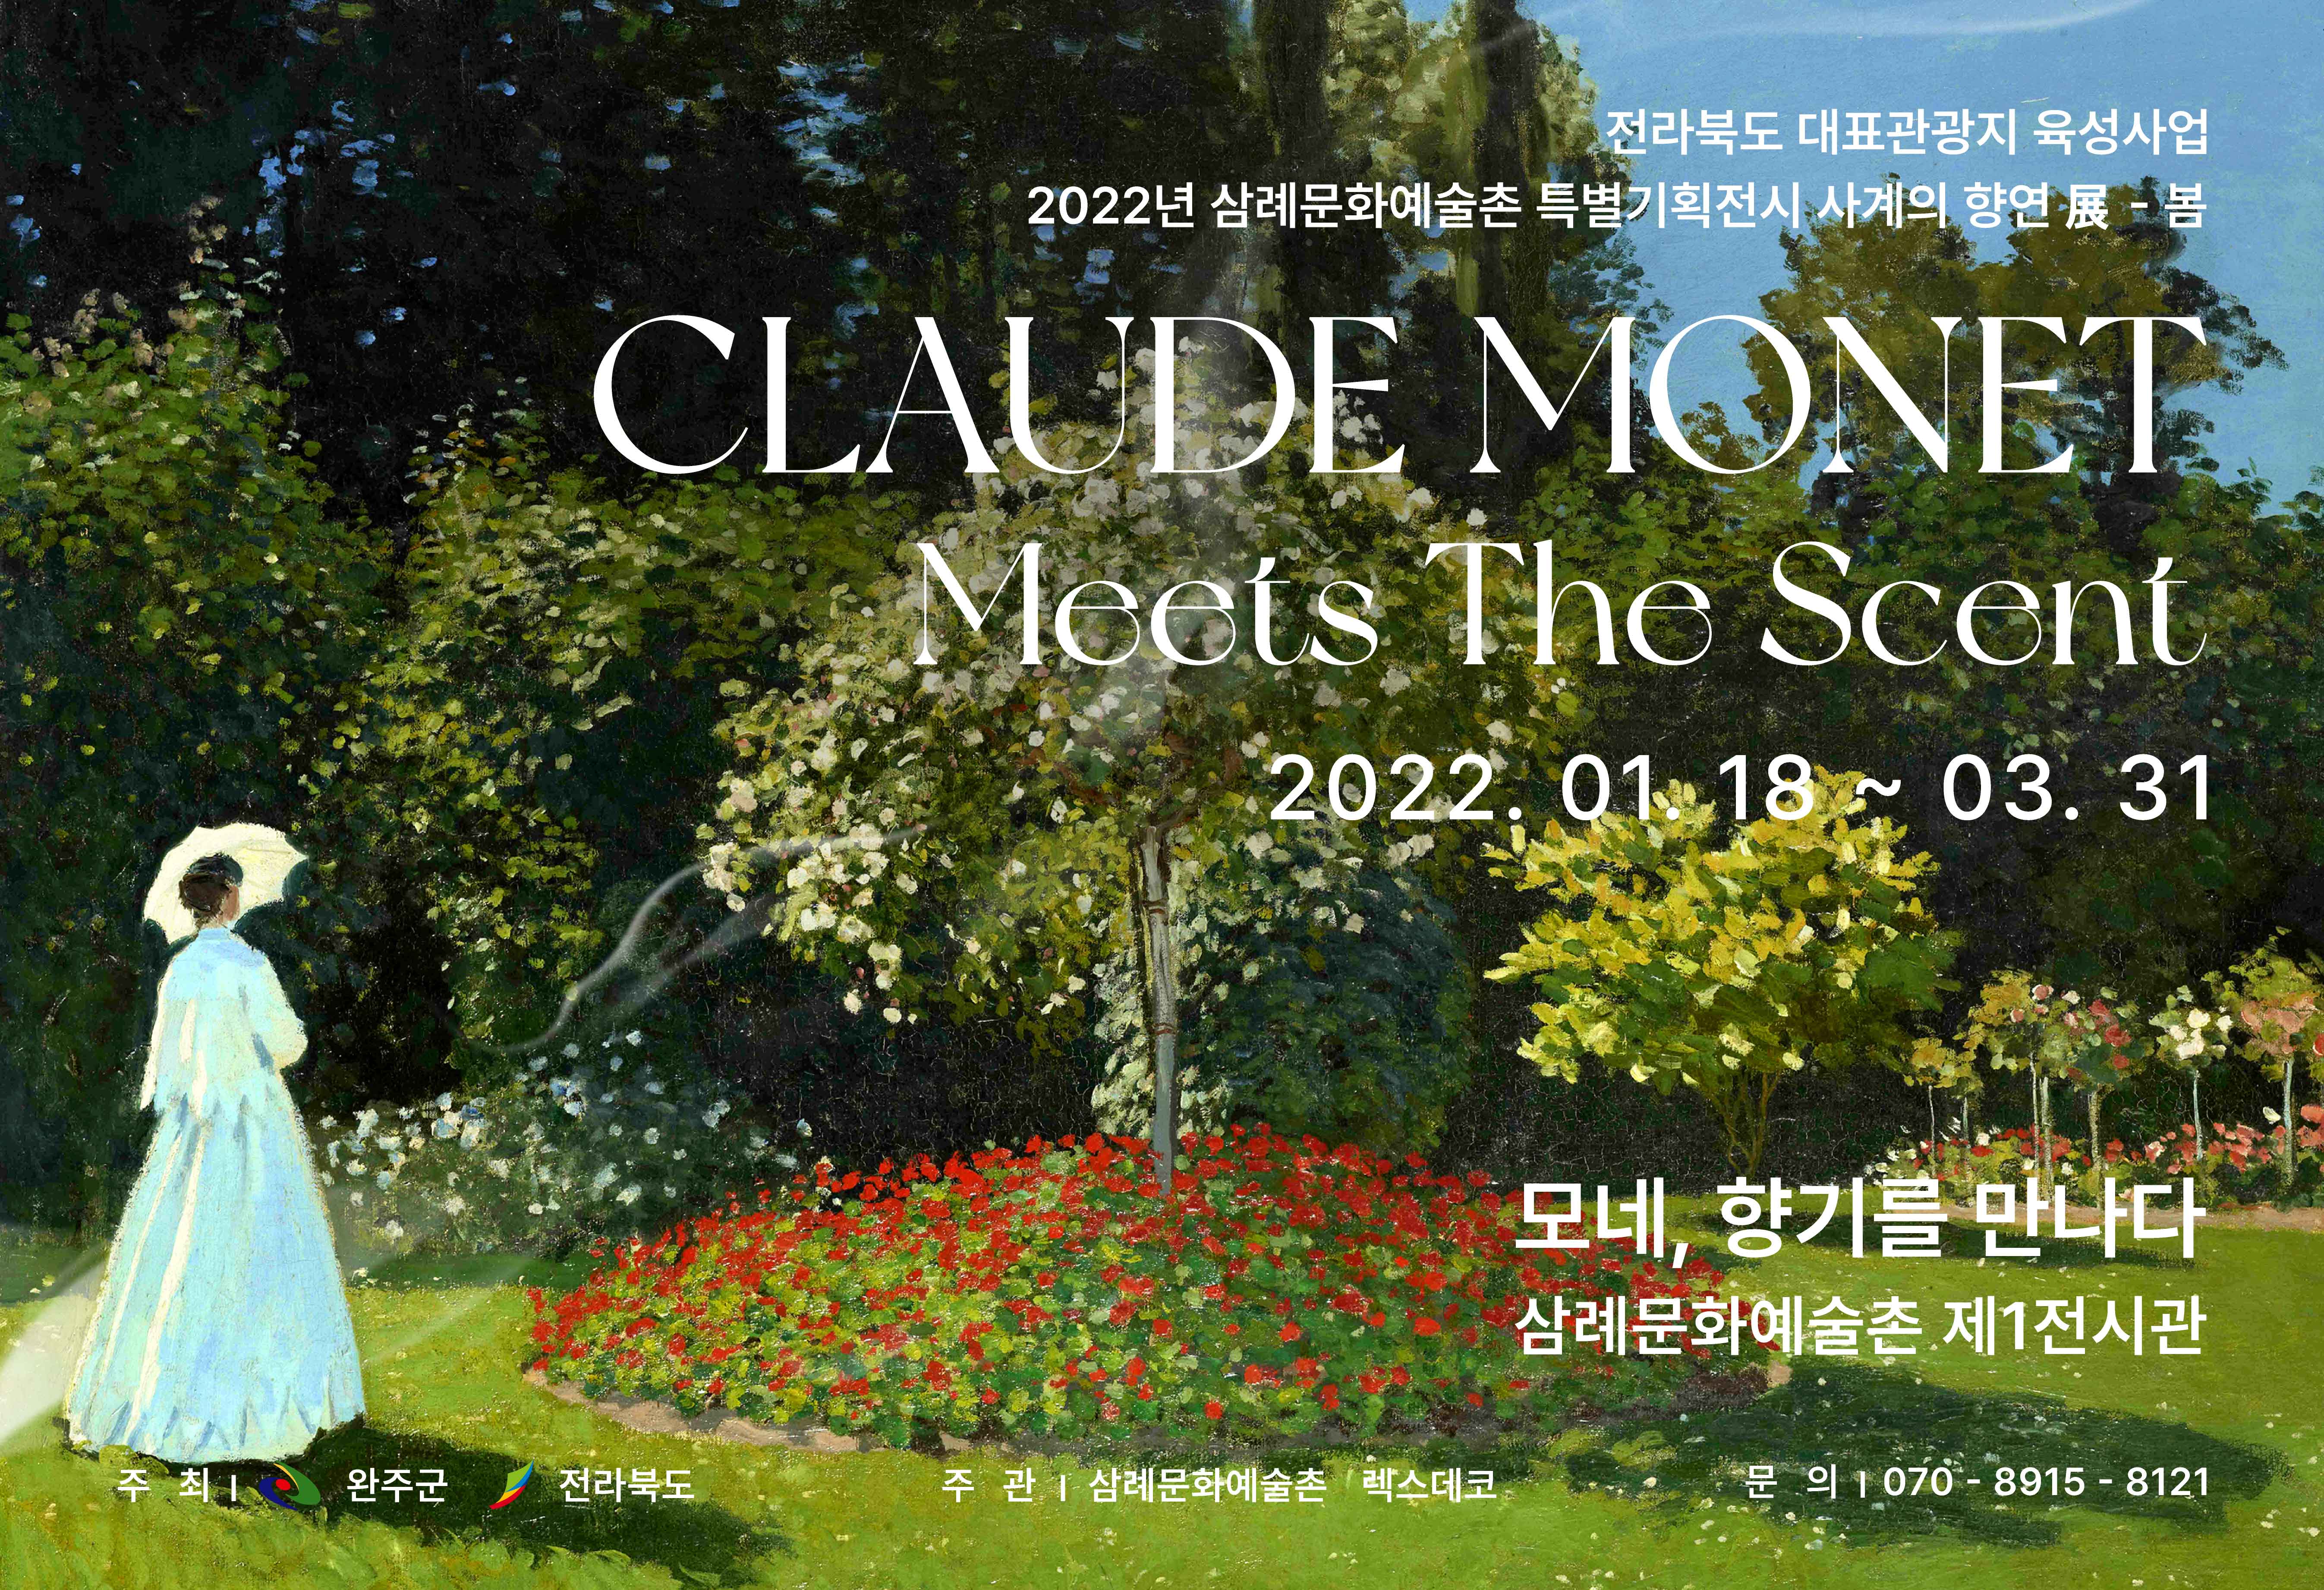 특별기획전시 사계의 향연展 - 봄 “모네, 향기를 만나다” “모네, 향기를 만나다”

2022년 1월, 삼례문화예술촌 개관 9주년 기념,
사계의 향연展 첫 번째 이야기 – 봄 “모네, 향기를 만나다”
전시회가 열렸습니다.

영원한 빛의 화가 Claude Monet(클로드 모네)의 유년기 시절부터
예술가의 길로 향하는 여정,
사랑하는 아내 카미유와 함께한 지베르니 정원과 수련까지.

모네의 일생을 담은 작품을  
시각·청각·후각으로 감상할 수 있는 레플리카 체험형 전시회로 함께했습니다.

2022. 1. 18 ~ 2022. 4. 3. (전시종료)
삼례문화예술촌 제1전시관



 